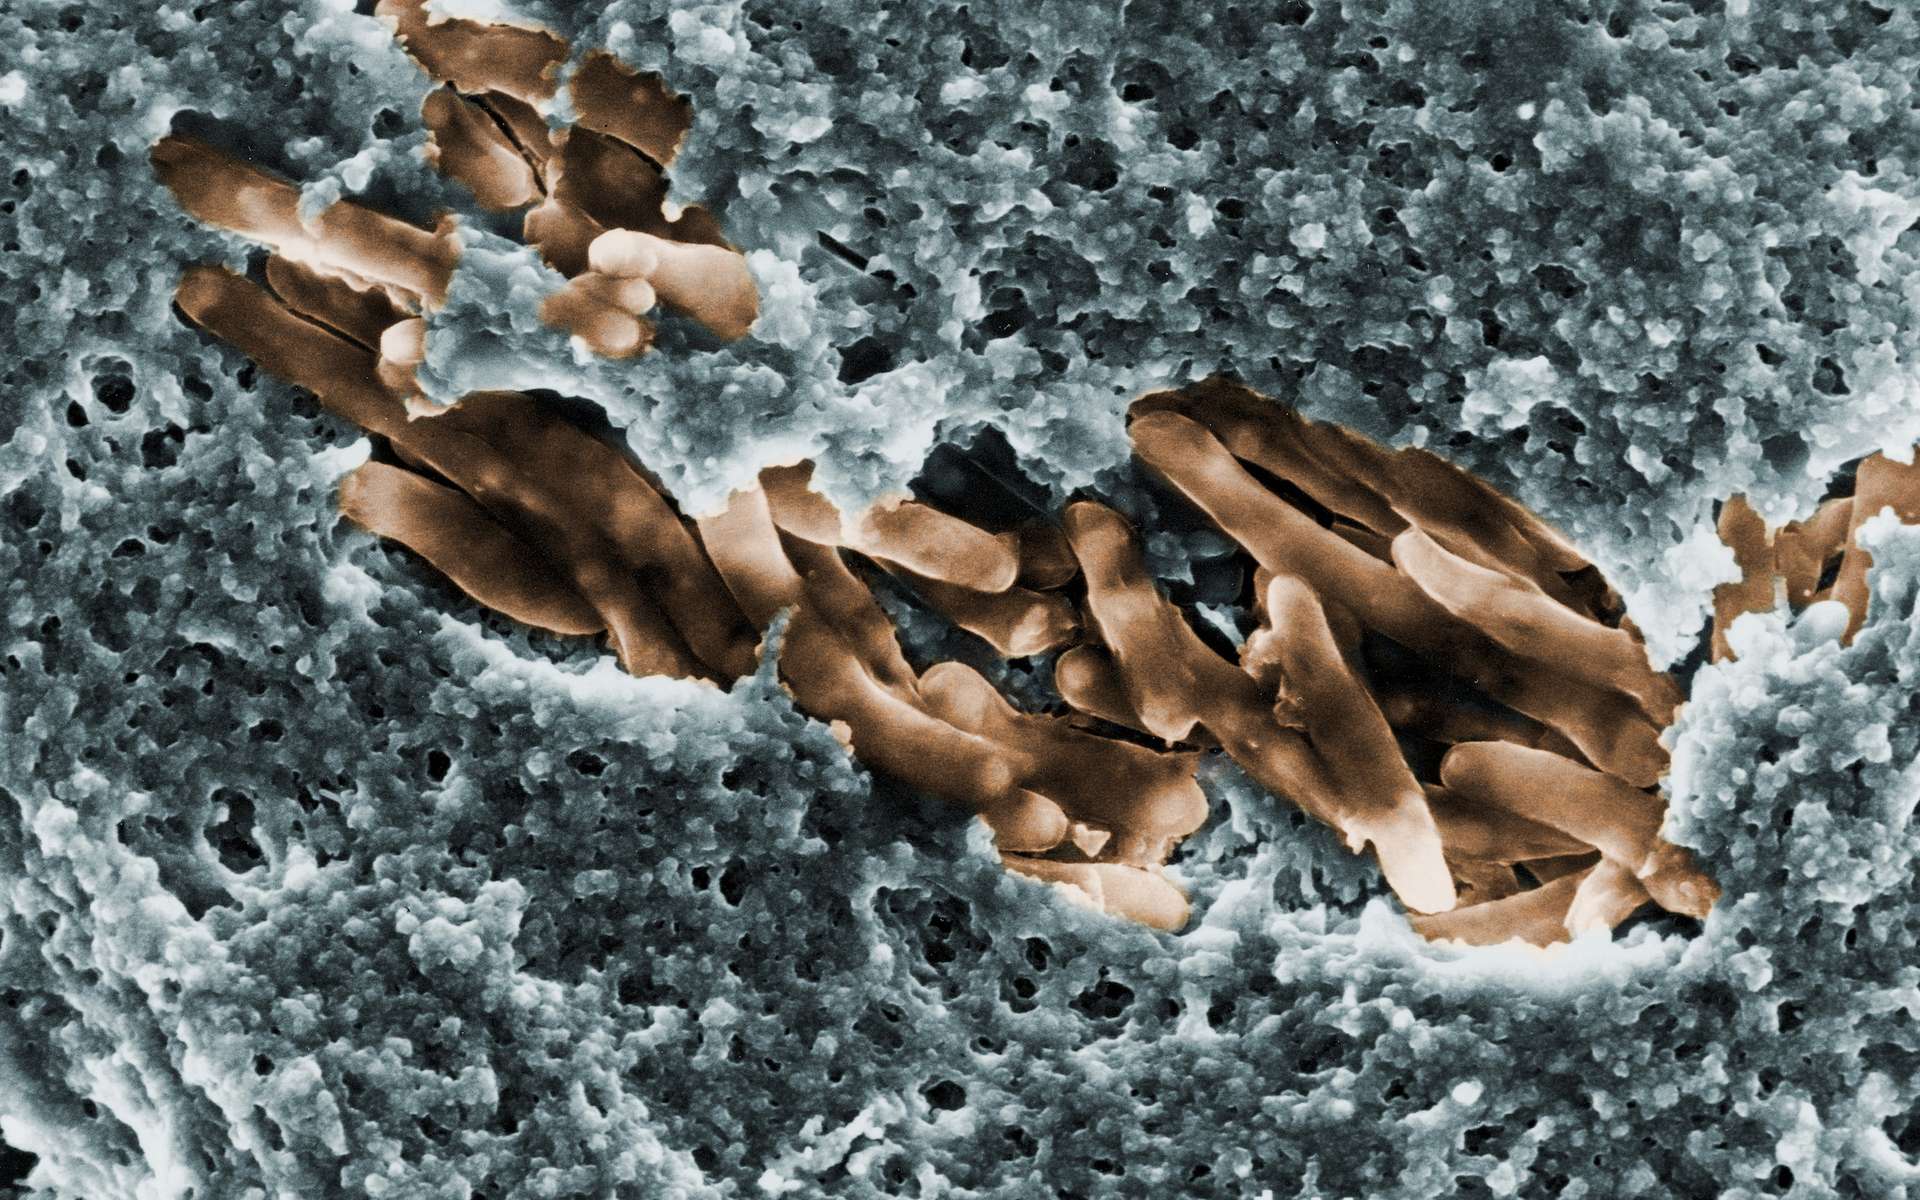 Recrudescence d'une bactérie mangeuse de chair en Australie